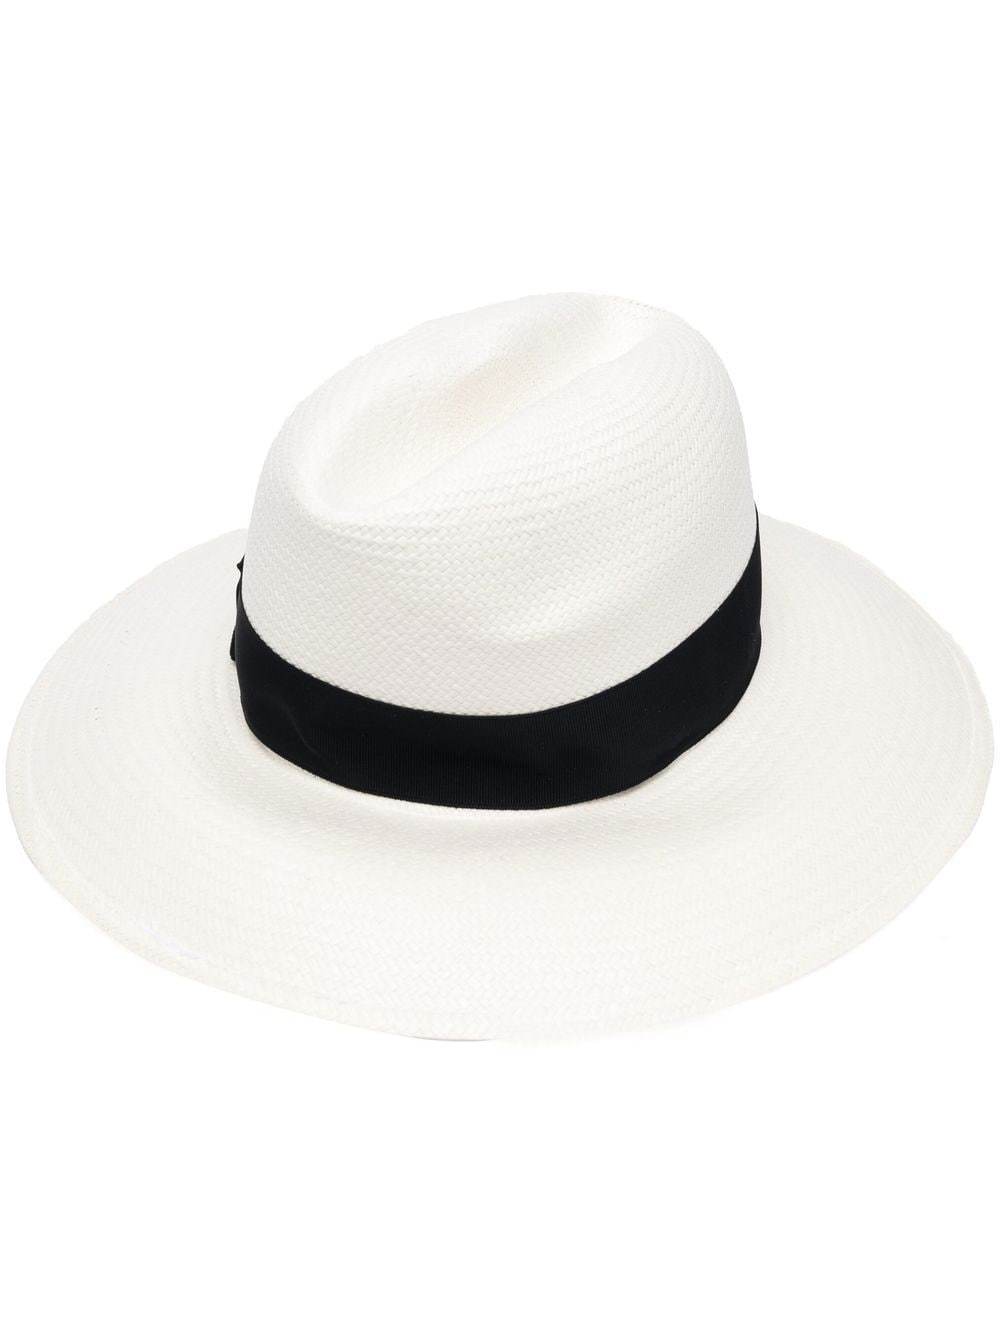 Sombrero de paja de Borsalino (228 euros).